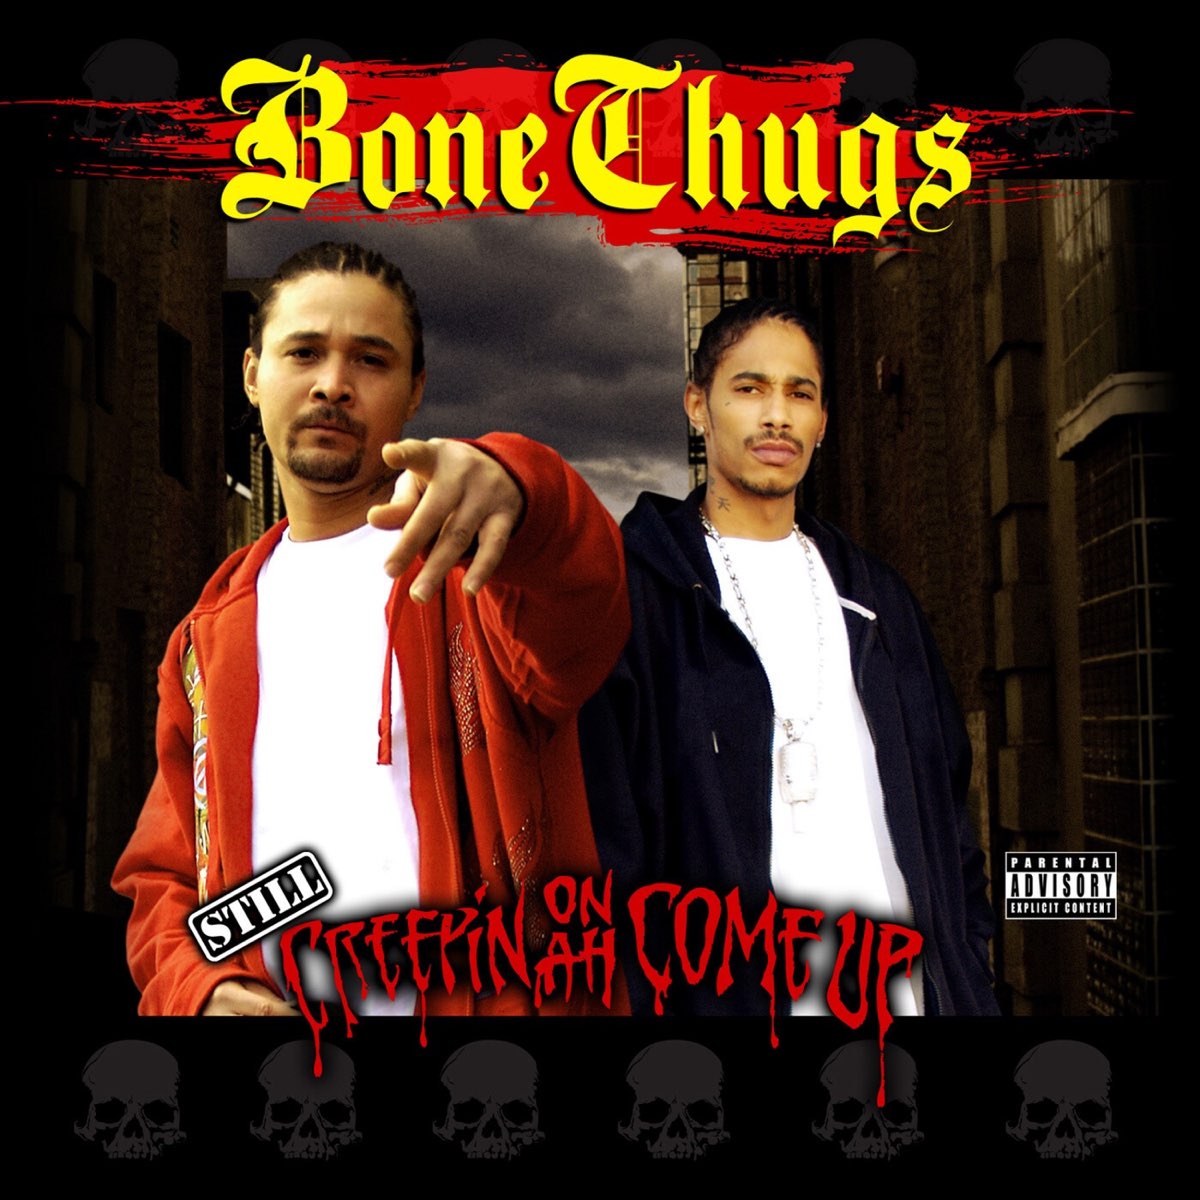 Bone n thugs. Bone Thugs-n-Harmony Creepin on Ah come up. Bone Thugs-n-Harmony - still Creepin on Ah come up (2008) обложка. Still Creepin on Ah come up. Creepin.